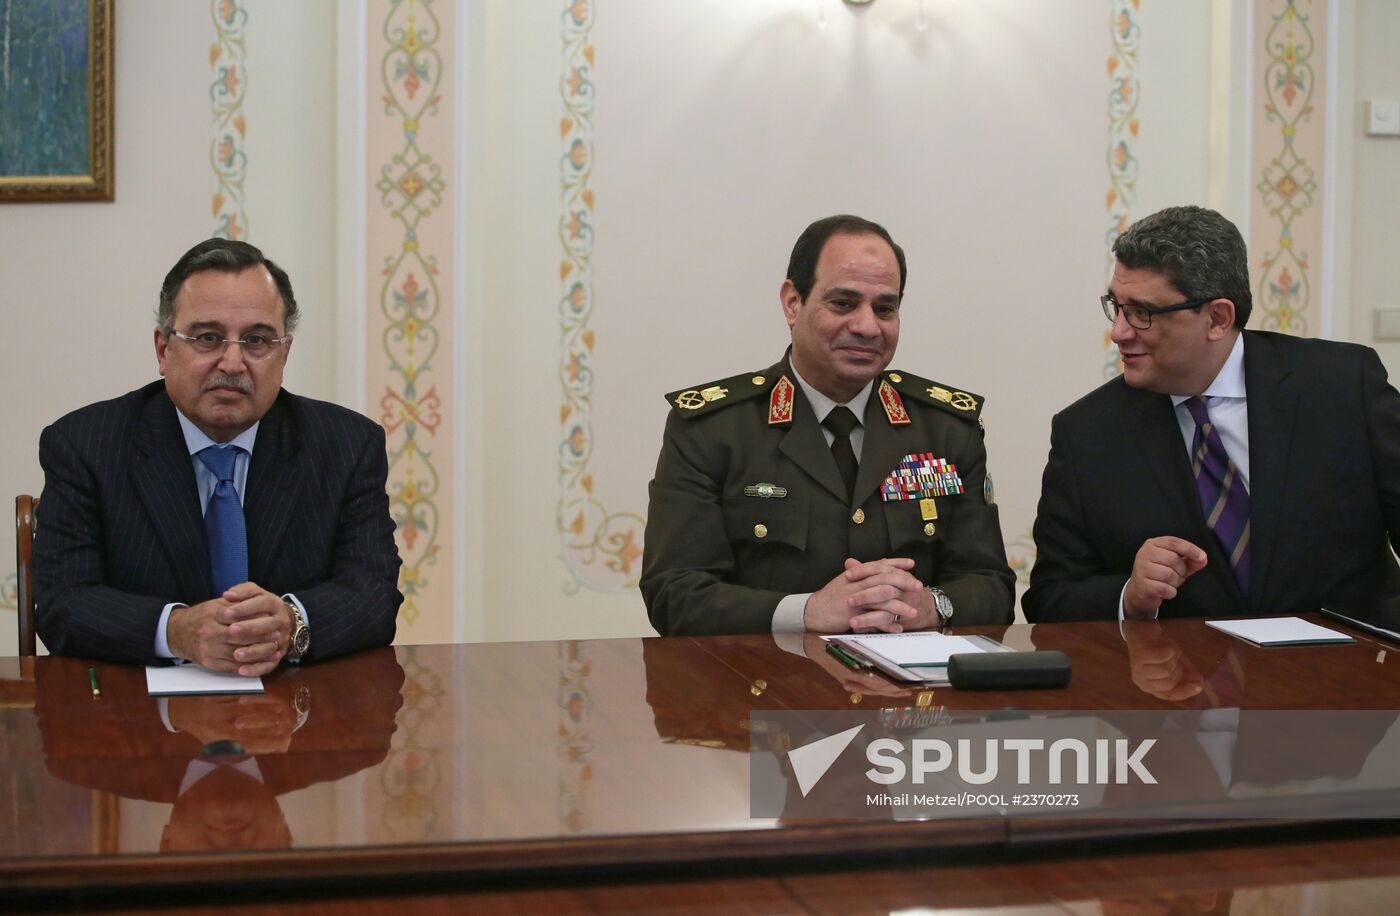 Vladimir Putin meets with Nabil Fahmi and Abdel Fattah el-Sisi